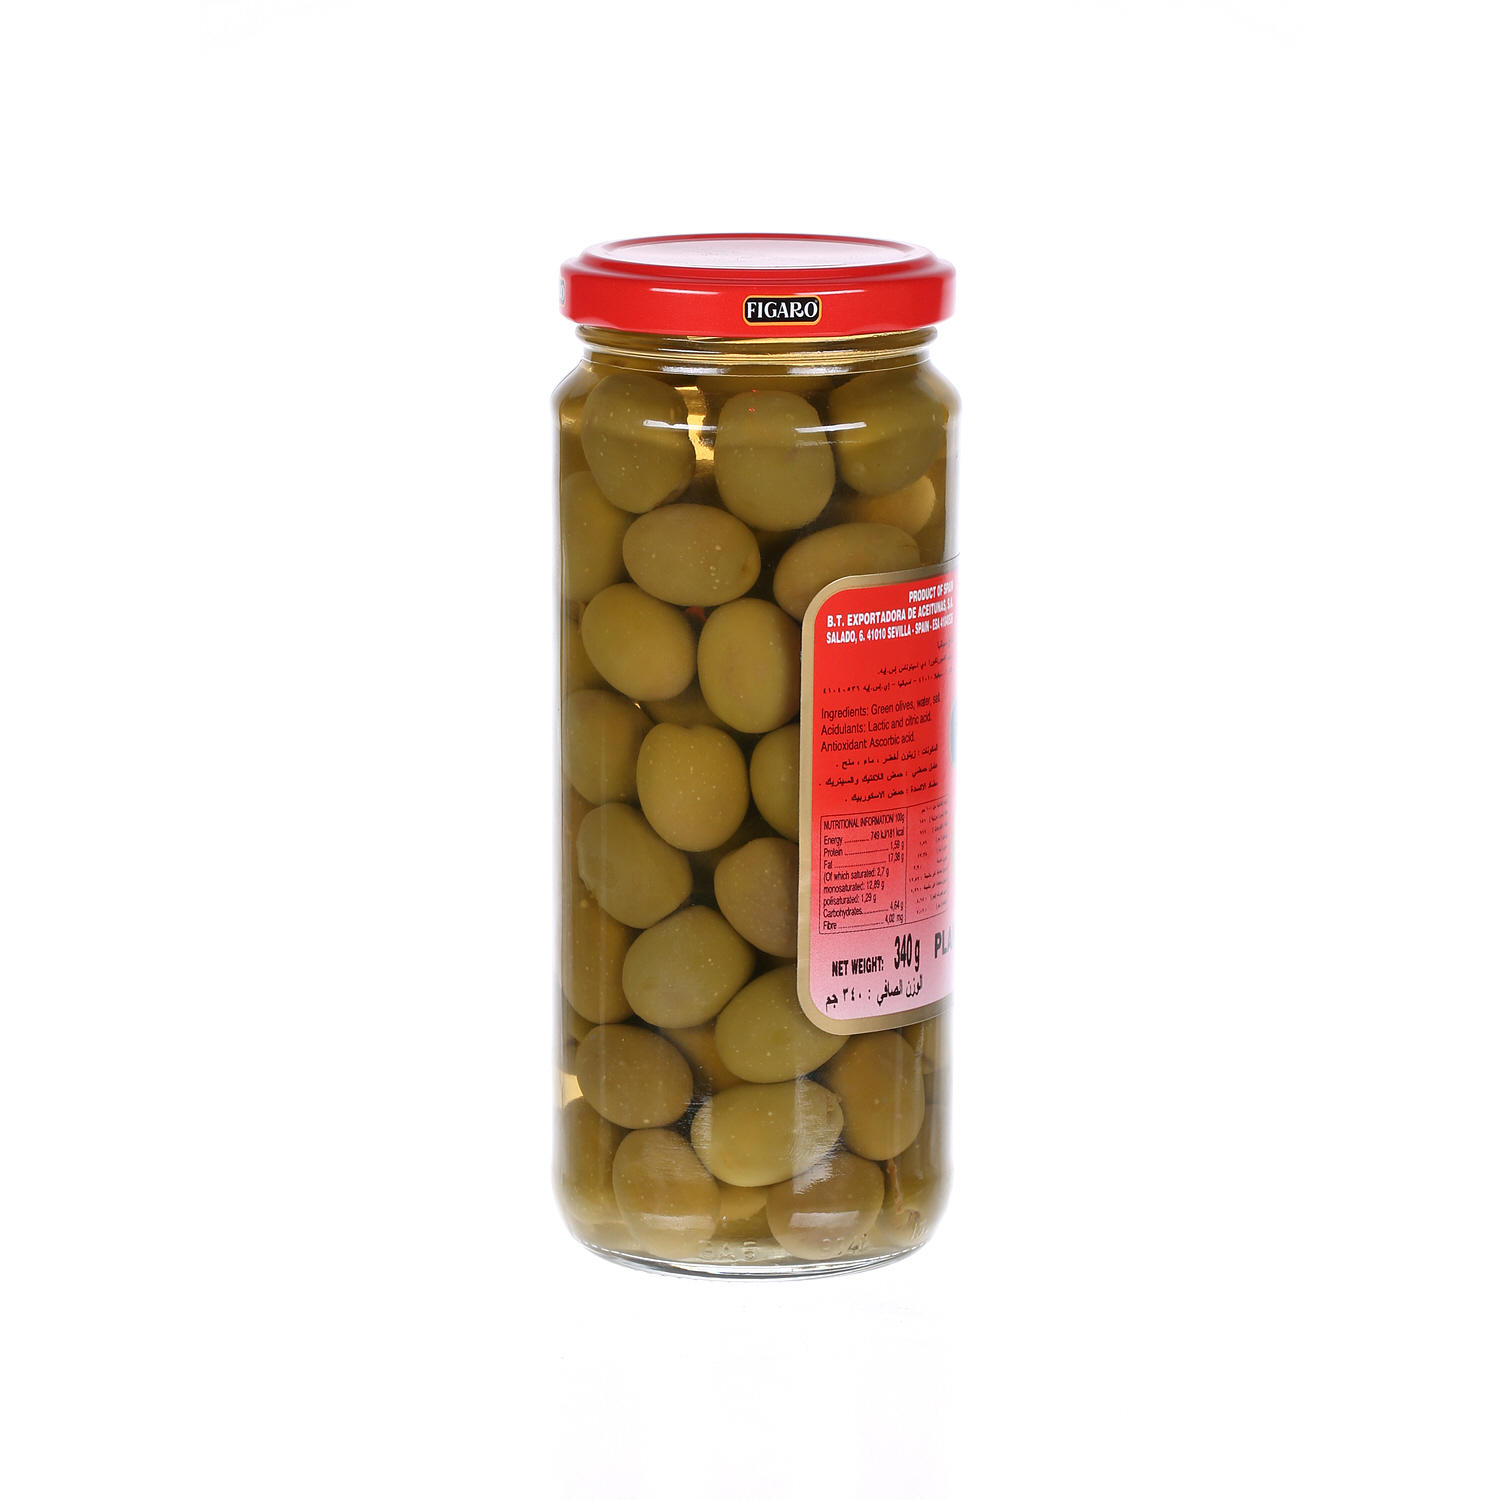 Figaro Plain Green Olives 200 g